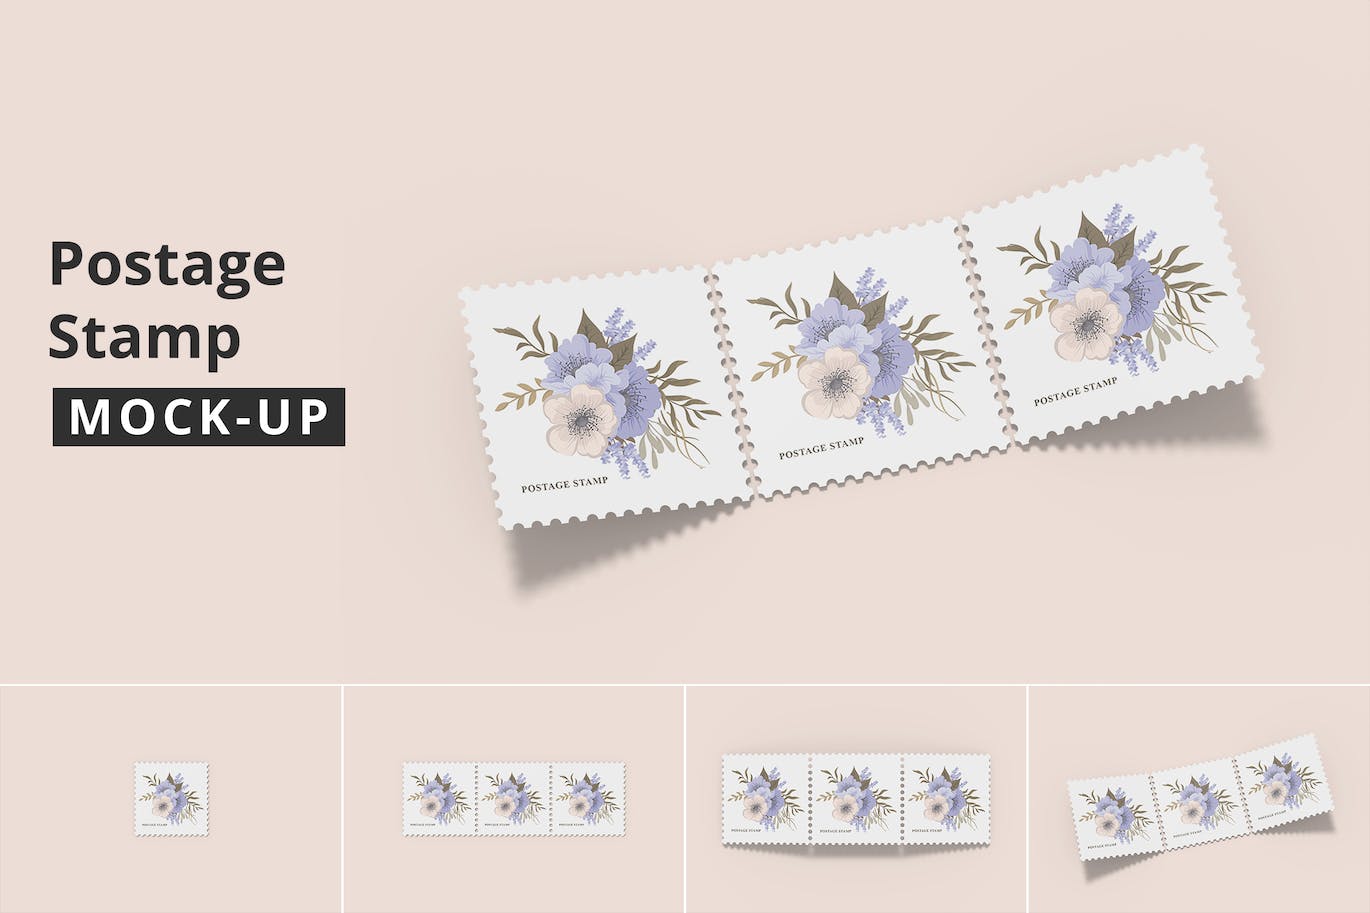 方形邮票图案设计样机 (PSD)